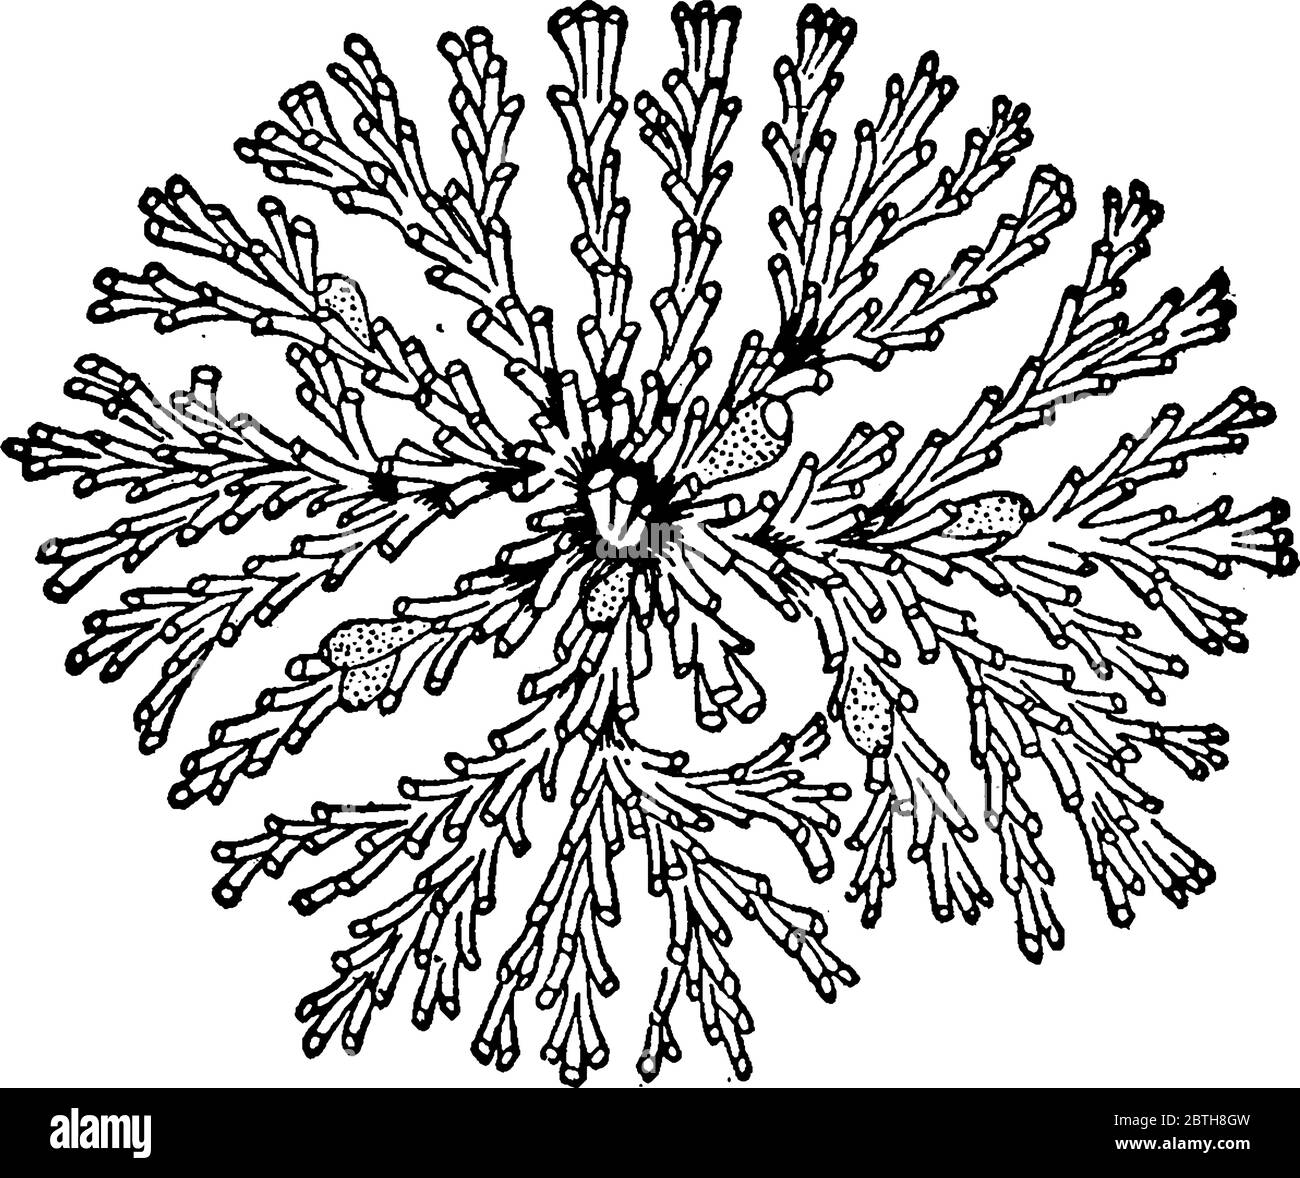 La figure montre un invertébrés aquatiques sédentaires du phylum Bryozoa, qui comprend les animaux de la mousse, un dessin de ligne vintage ou une illustration de gravure. Illustration de Vecteur